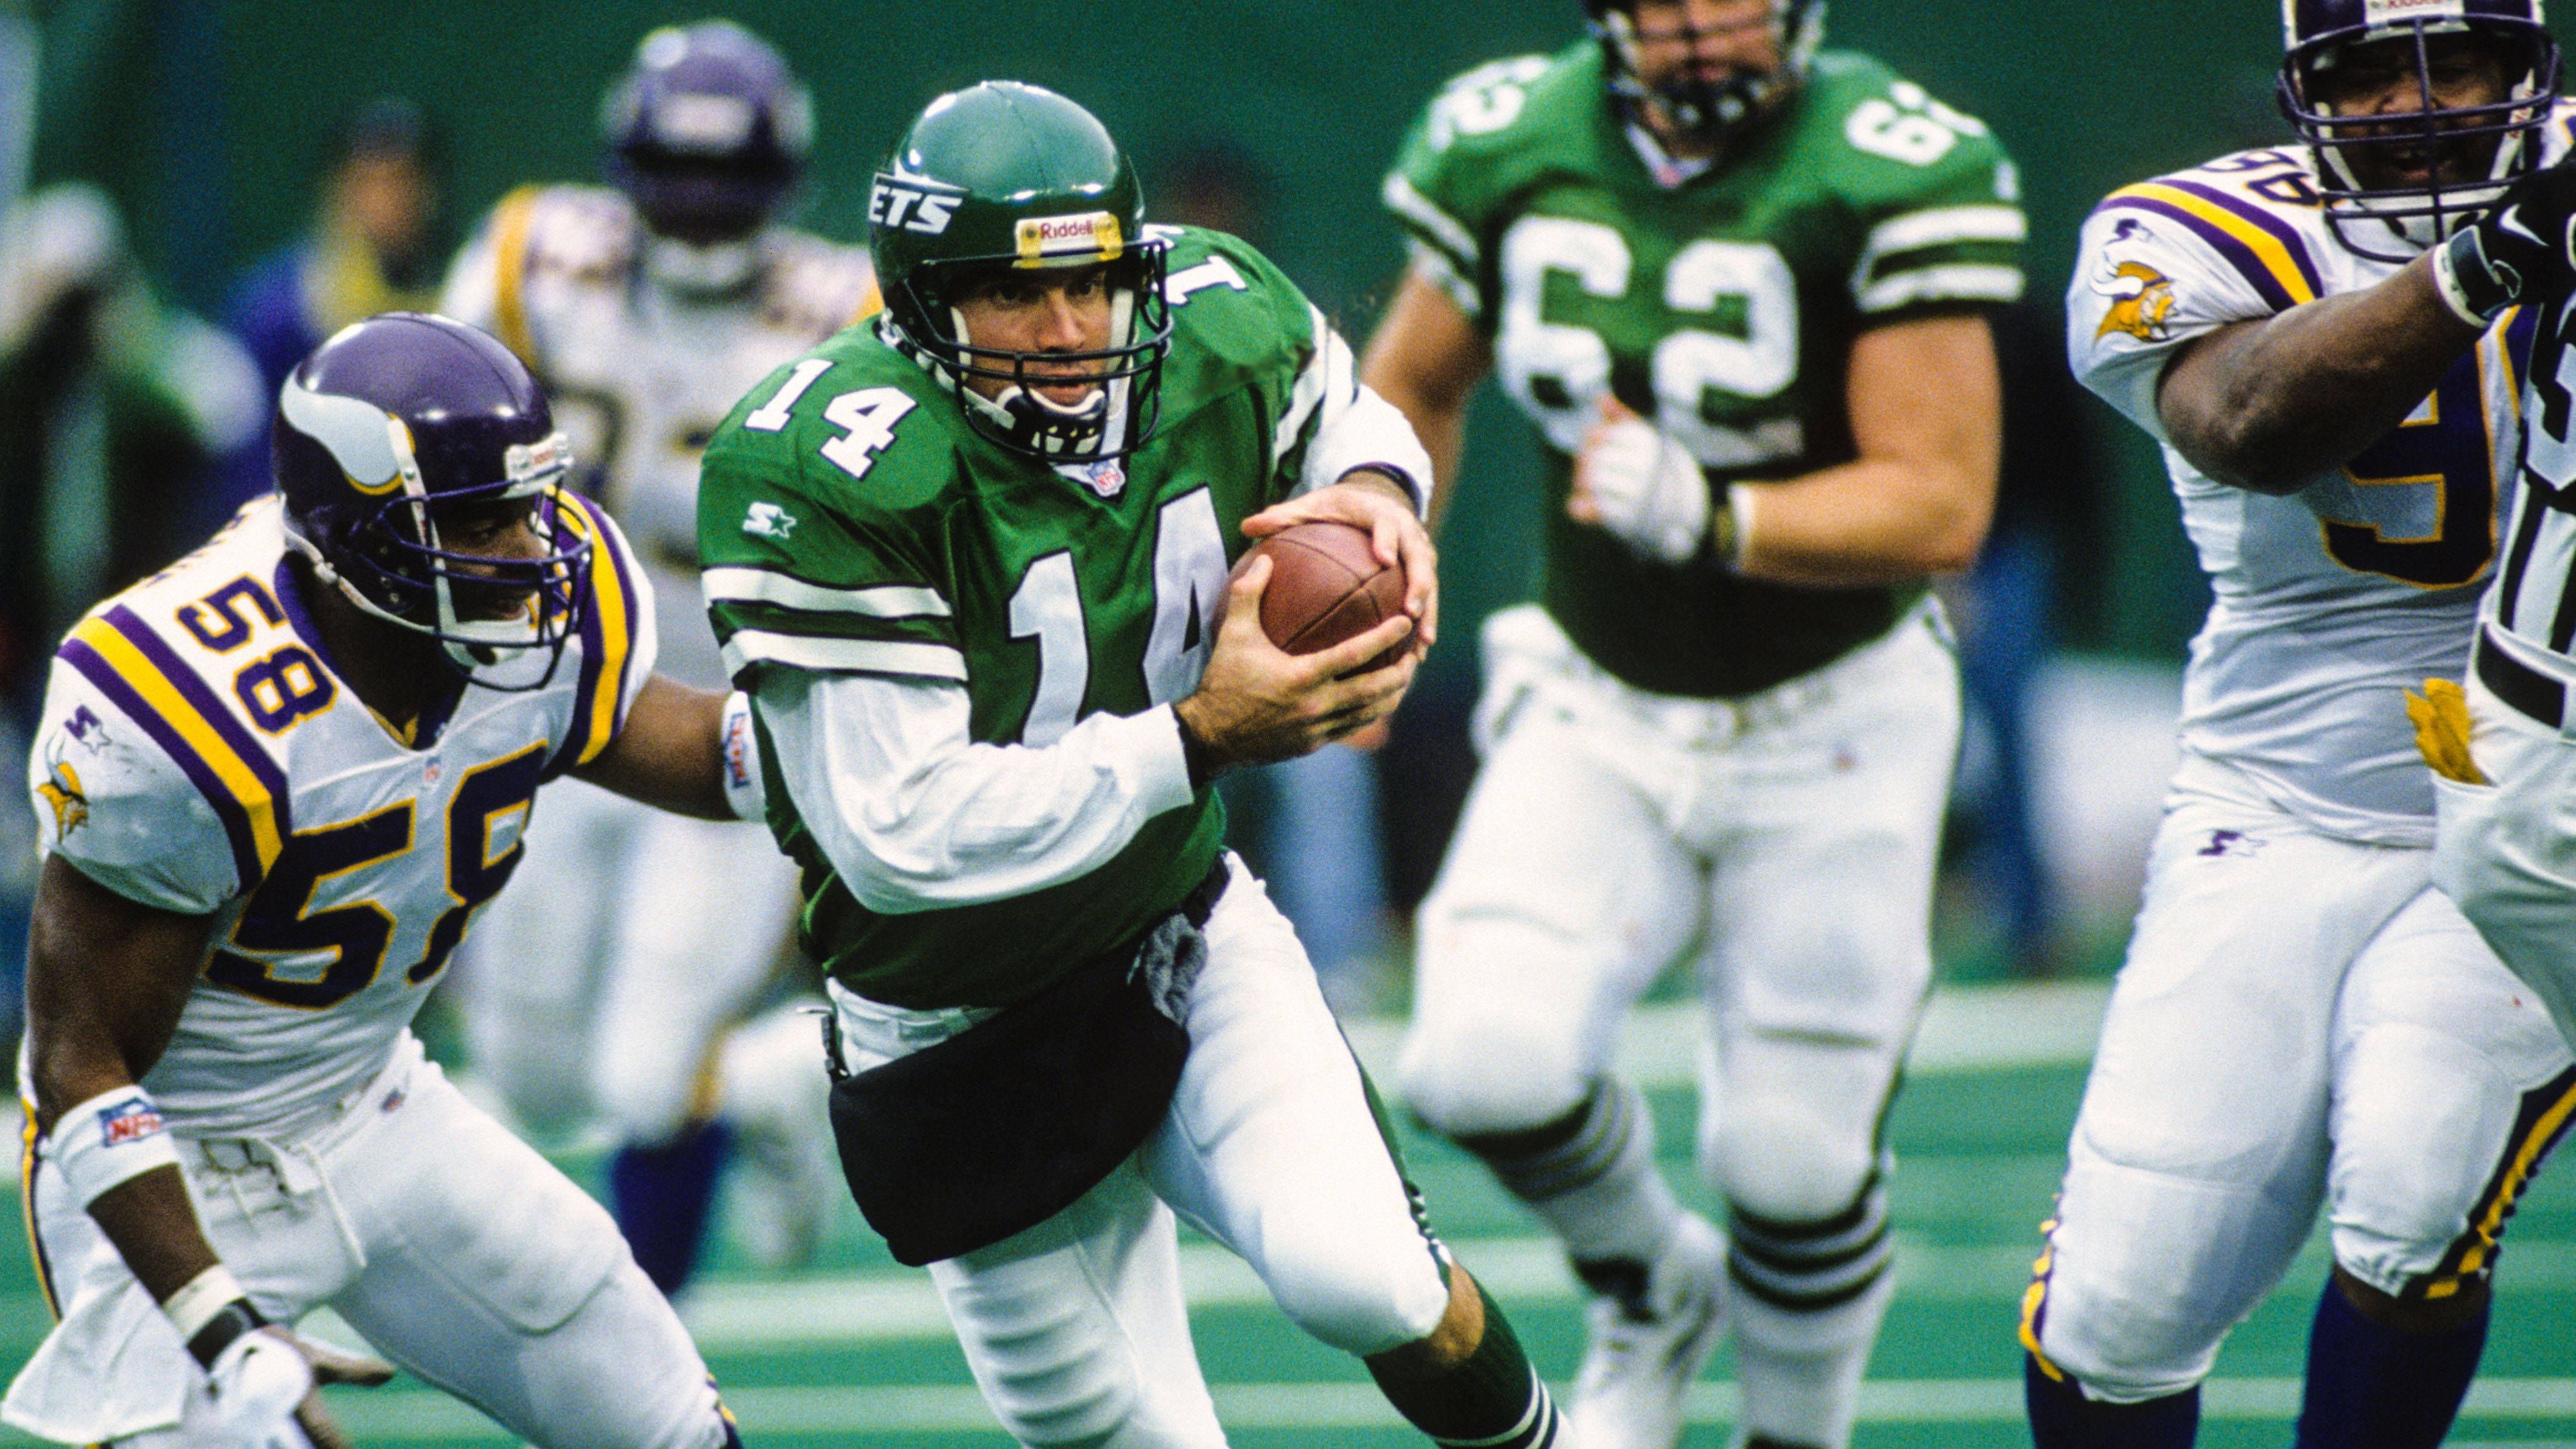 <strong>1997 - Assistant Head Coach und Defensive Coordinator bei den Jets<br></strong>Jenem Parcells folgte er dann für die nächsten drei Jahre zu den New York Jets als persönlicher Assistent und Defensive Coordinator. Ein Super Bowl gelang zwar nicht, aber 1998 wurden immerhin die Playoffs erreicht.